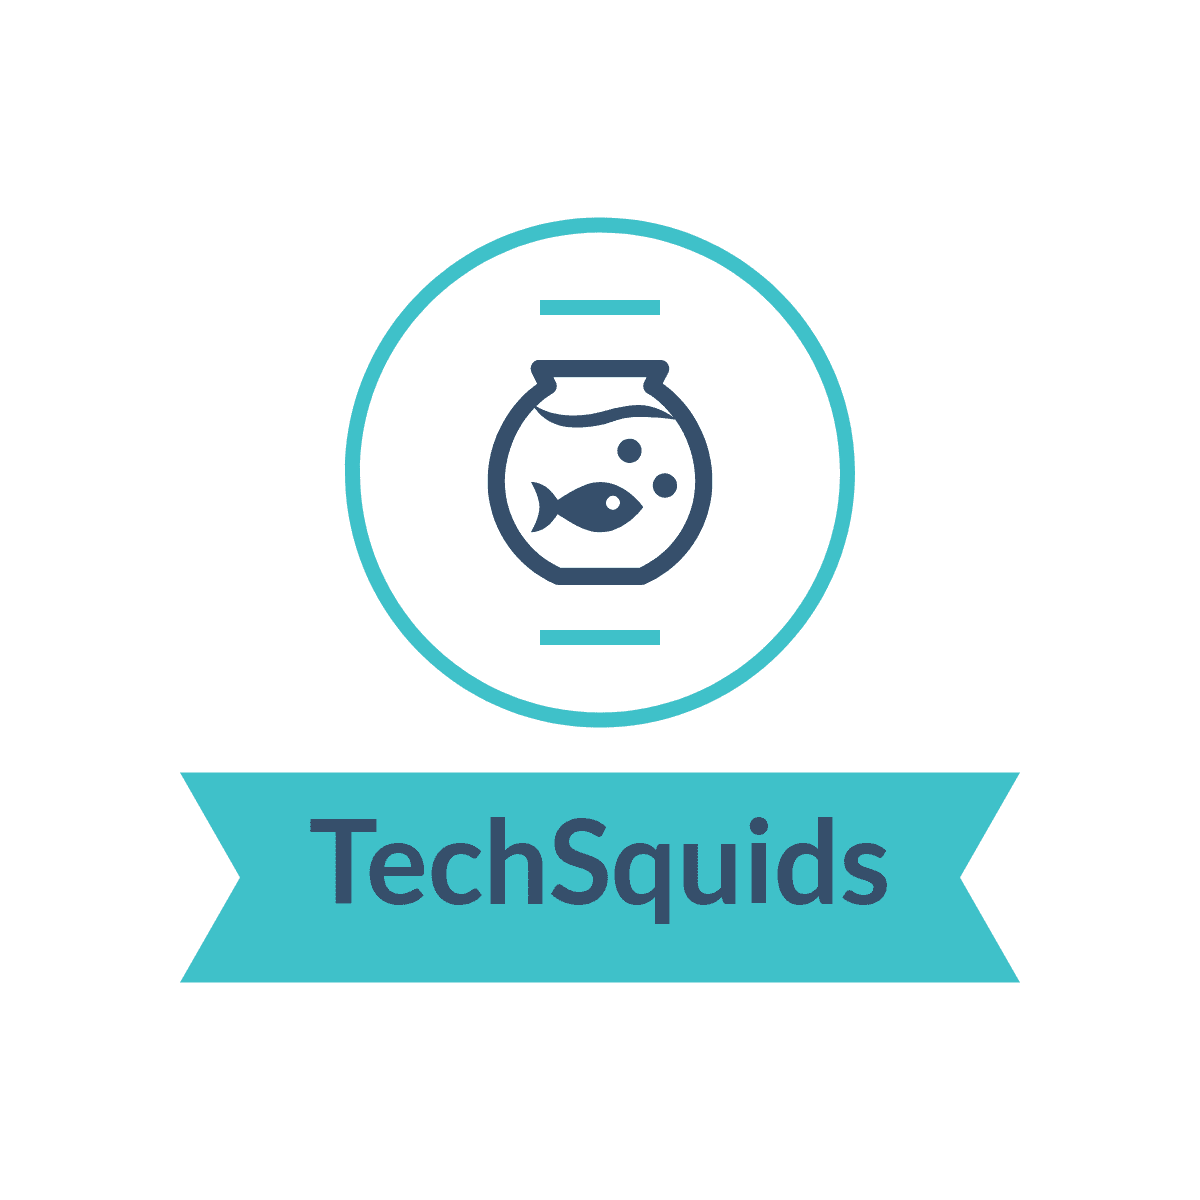 Techsquids